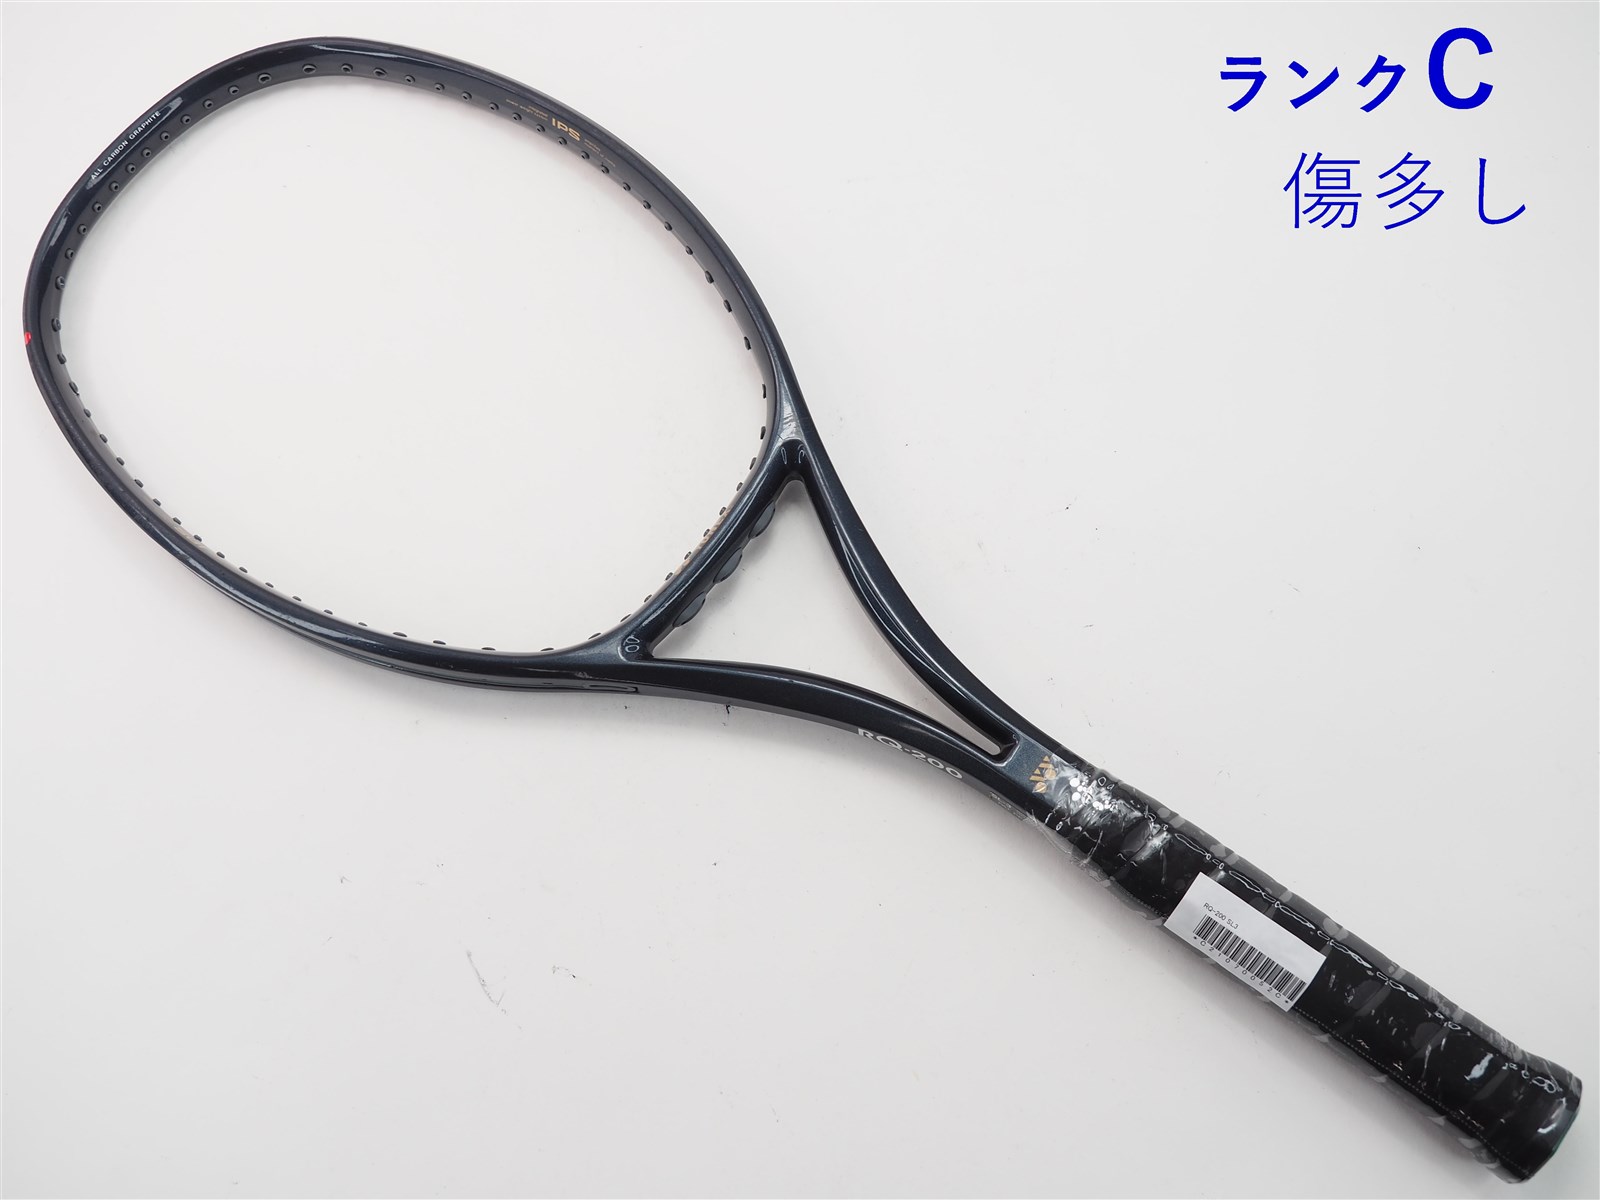 【中古】ヨネックス RQ-200YONEX RQ-200(SL3)【中古 テニスラケット】